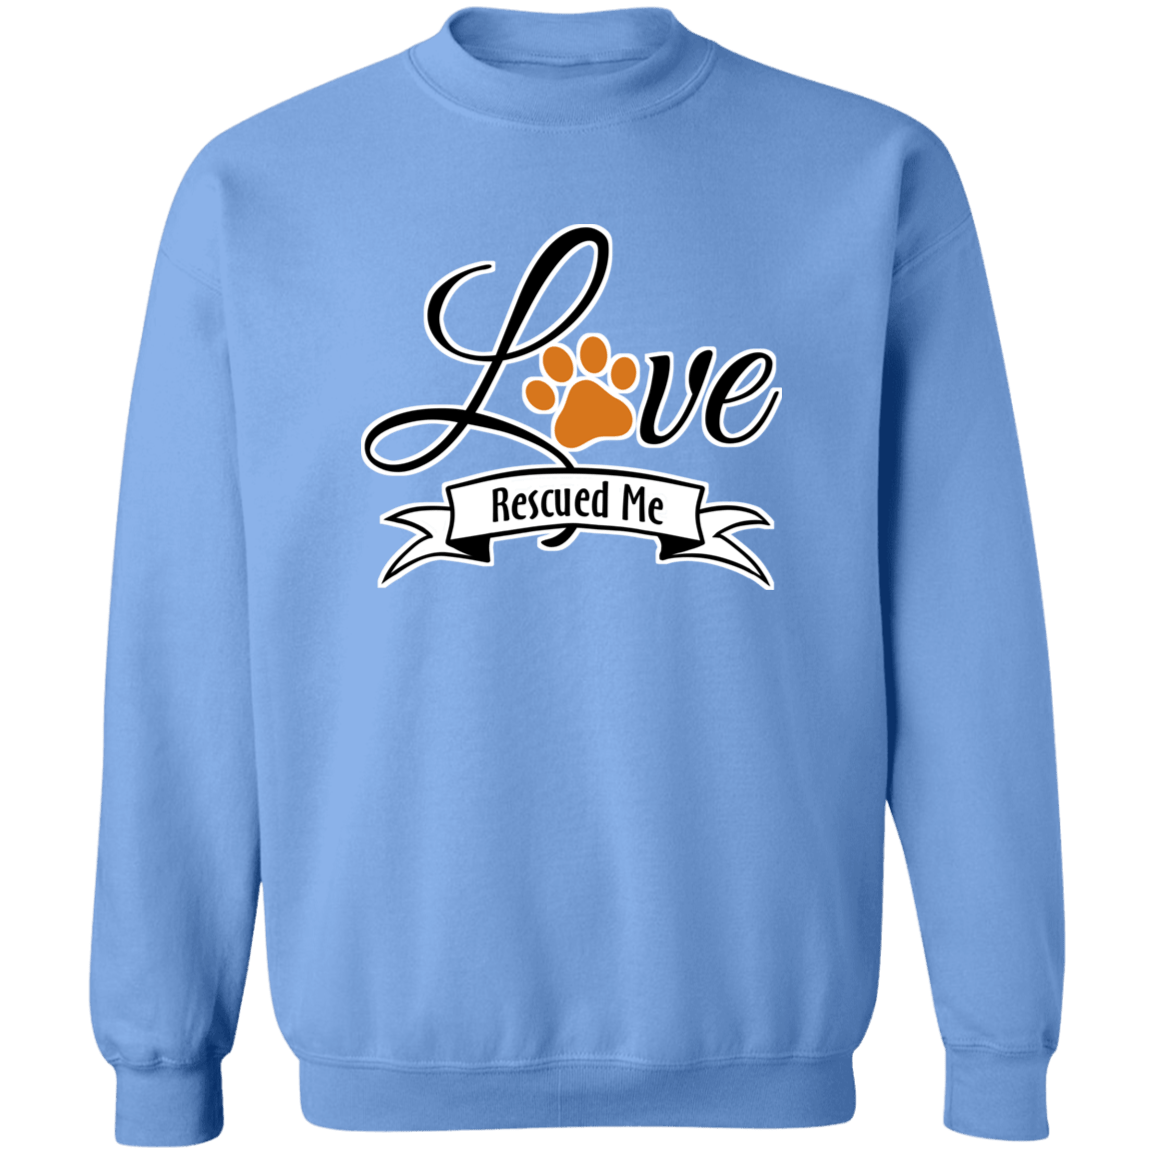 Love Rescued Me - Sweatshirt.